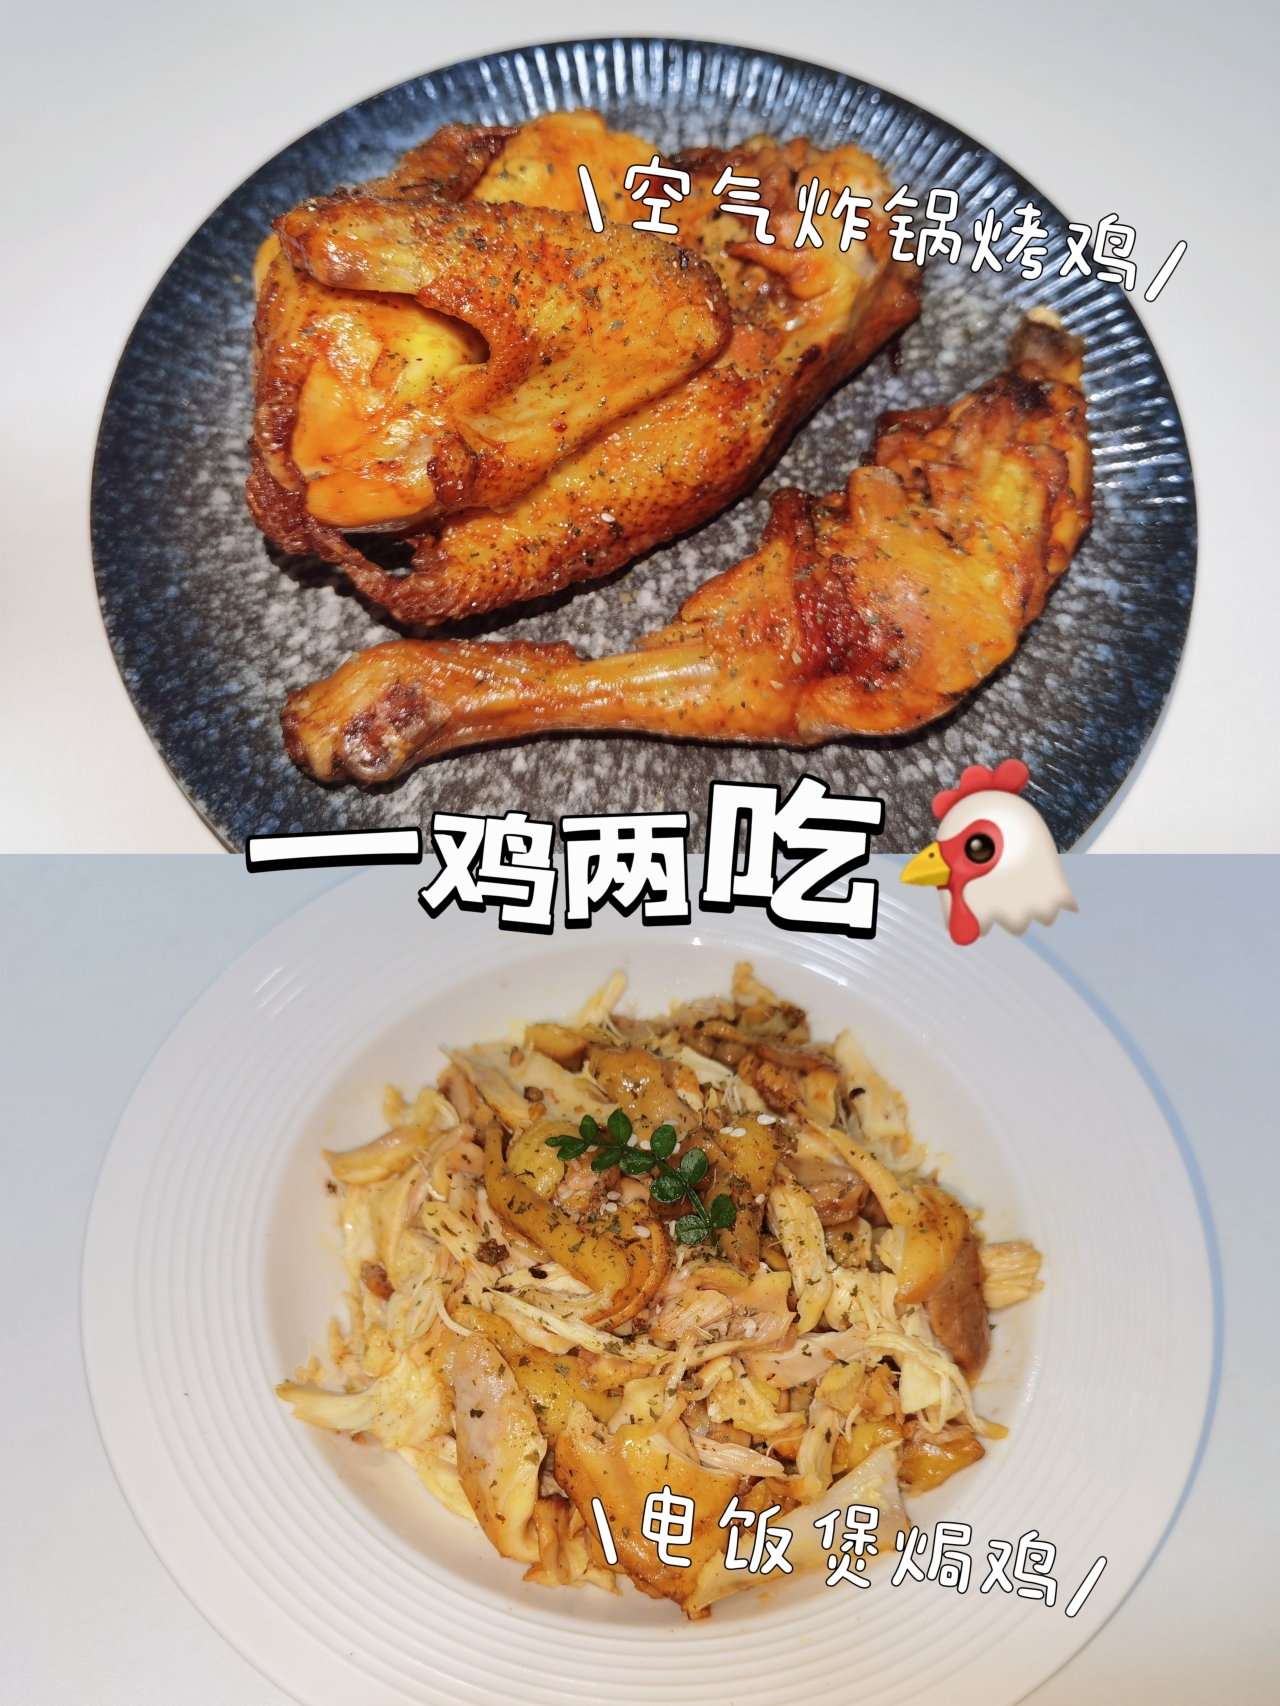 一鸡两吃🐔电饭煲焗鸡&空气炸锅烤鸡